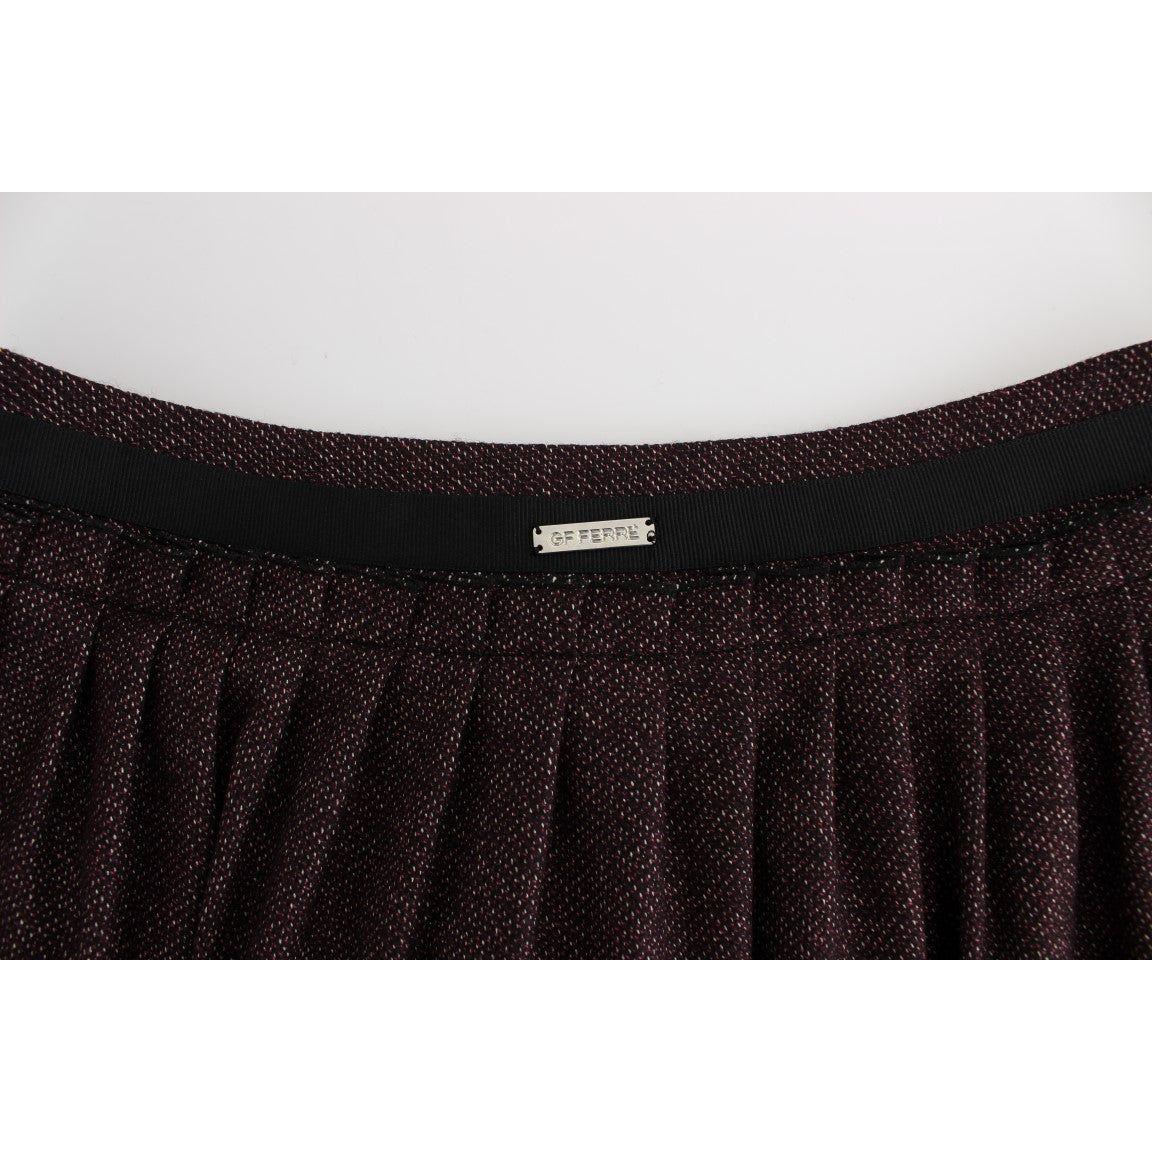 GF FerreChic Purple Mini Skirt for Elegant EveningsMcRichard Designer Brands£129.00